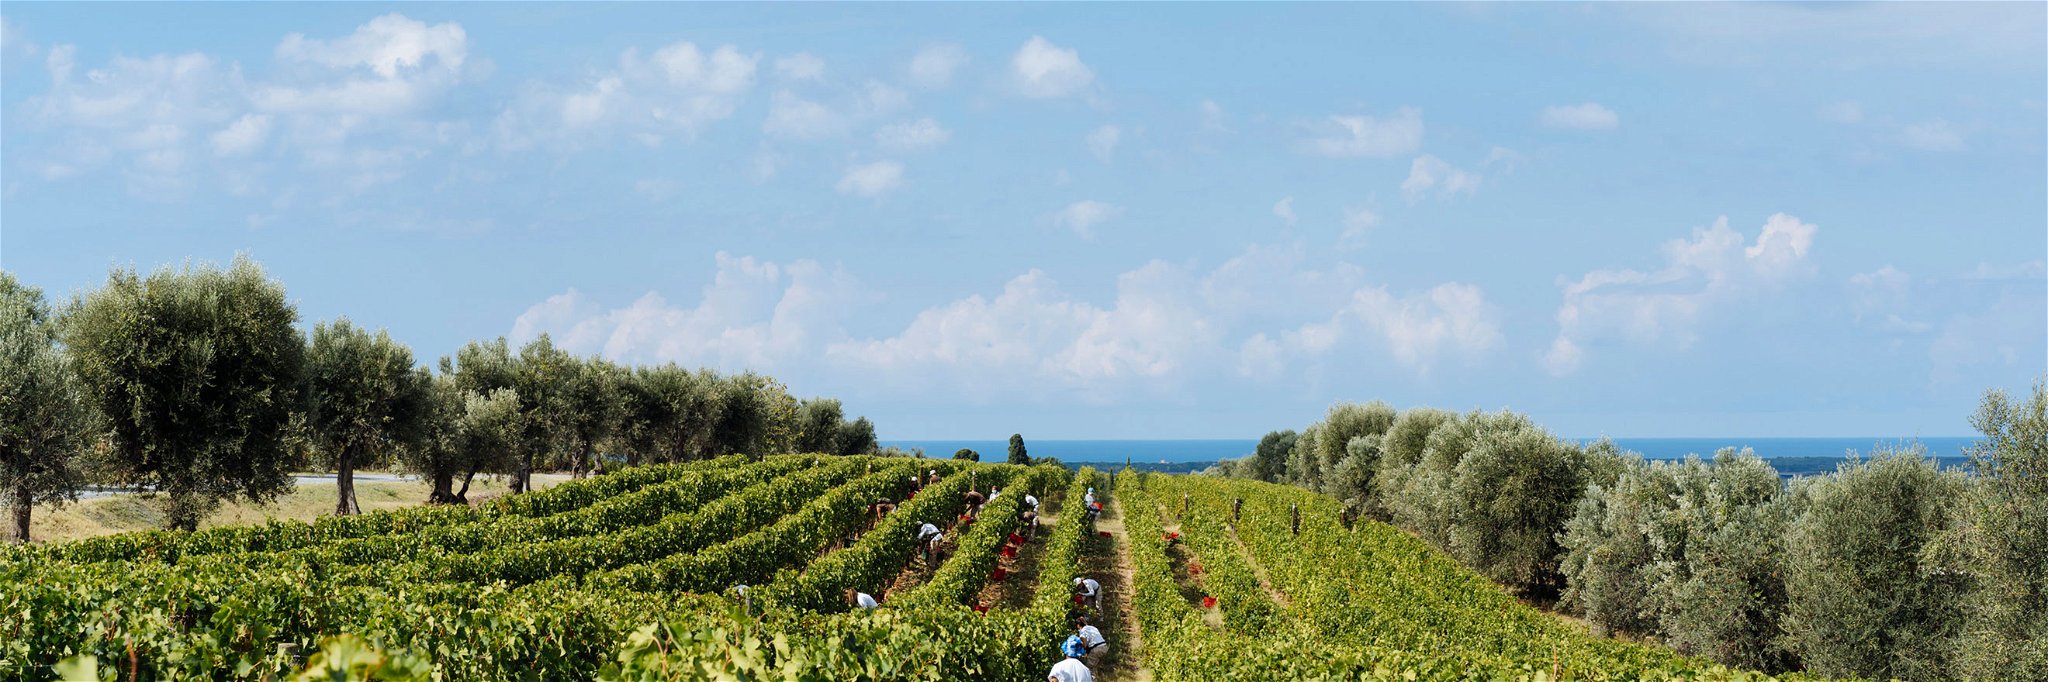 Das Weingut Ornellaia berichtet von einem hervorragenden Potenzial der Trauben.